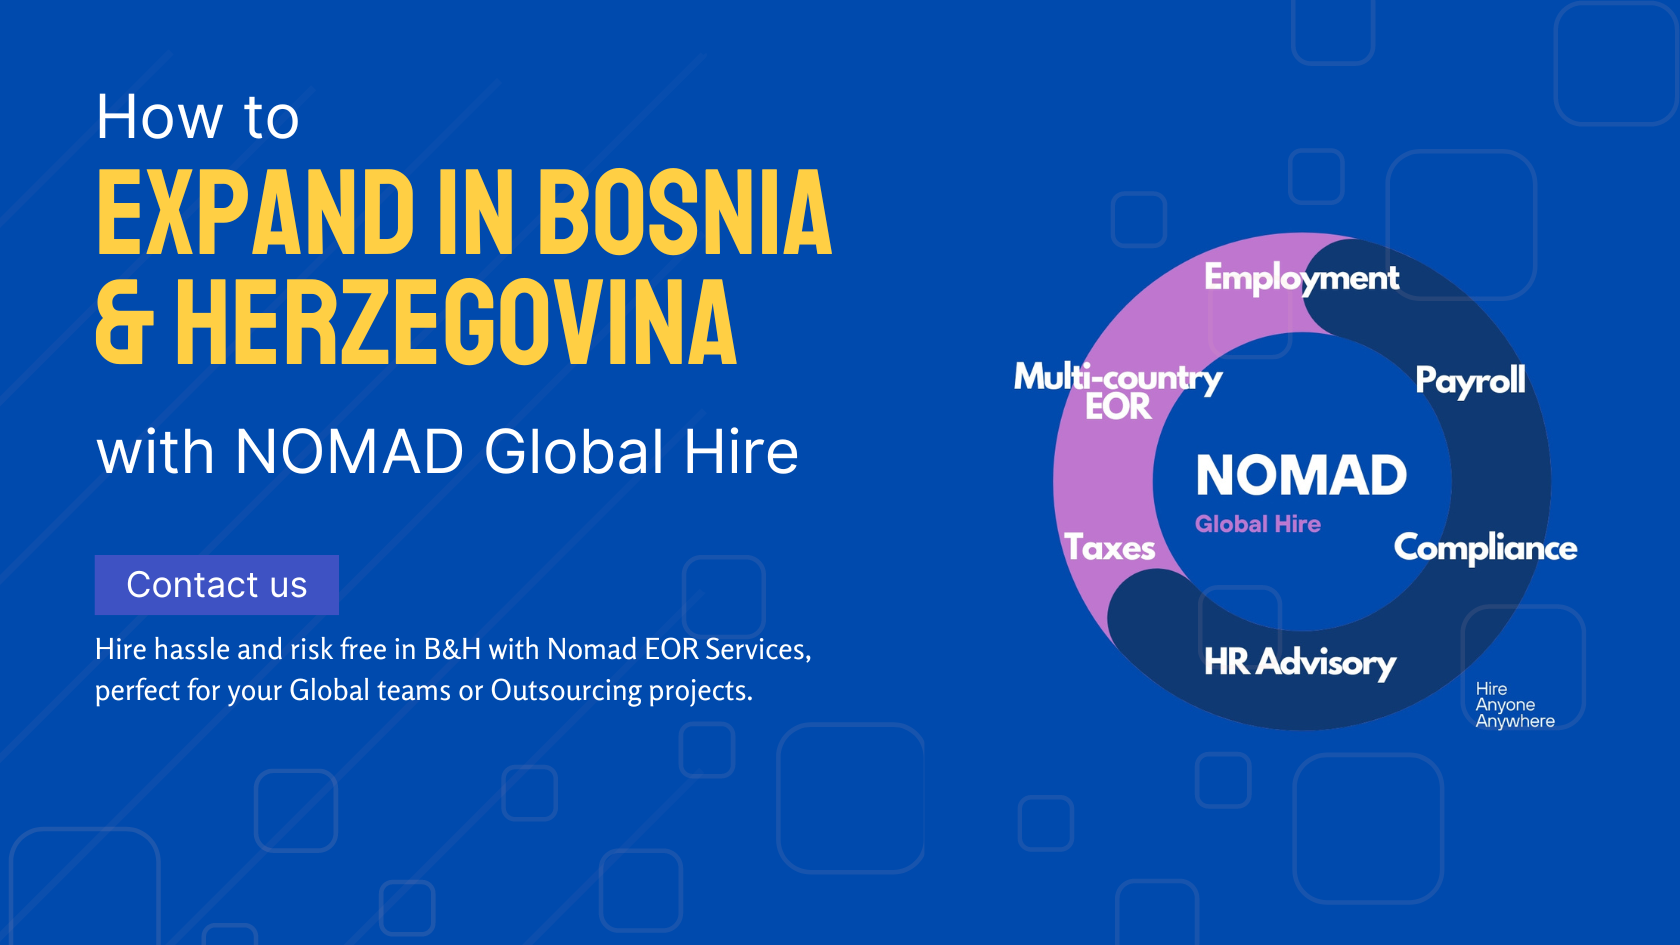 Nomad Global Hire Bosnia & Herzegovina